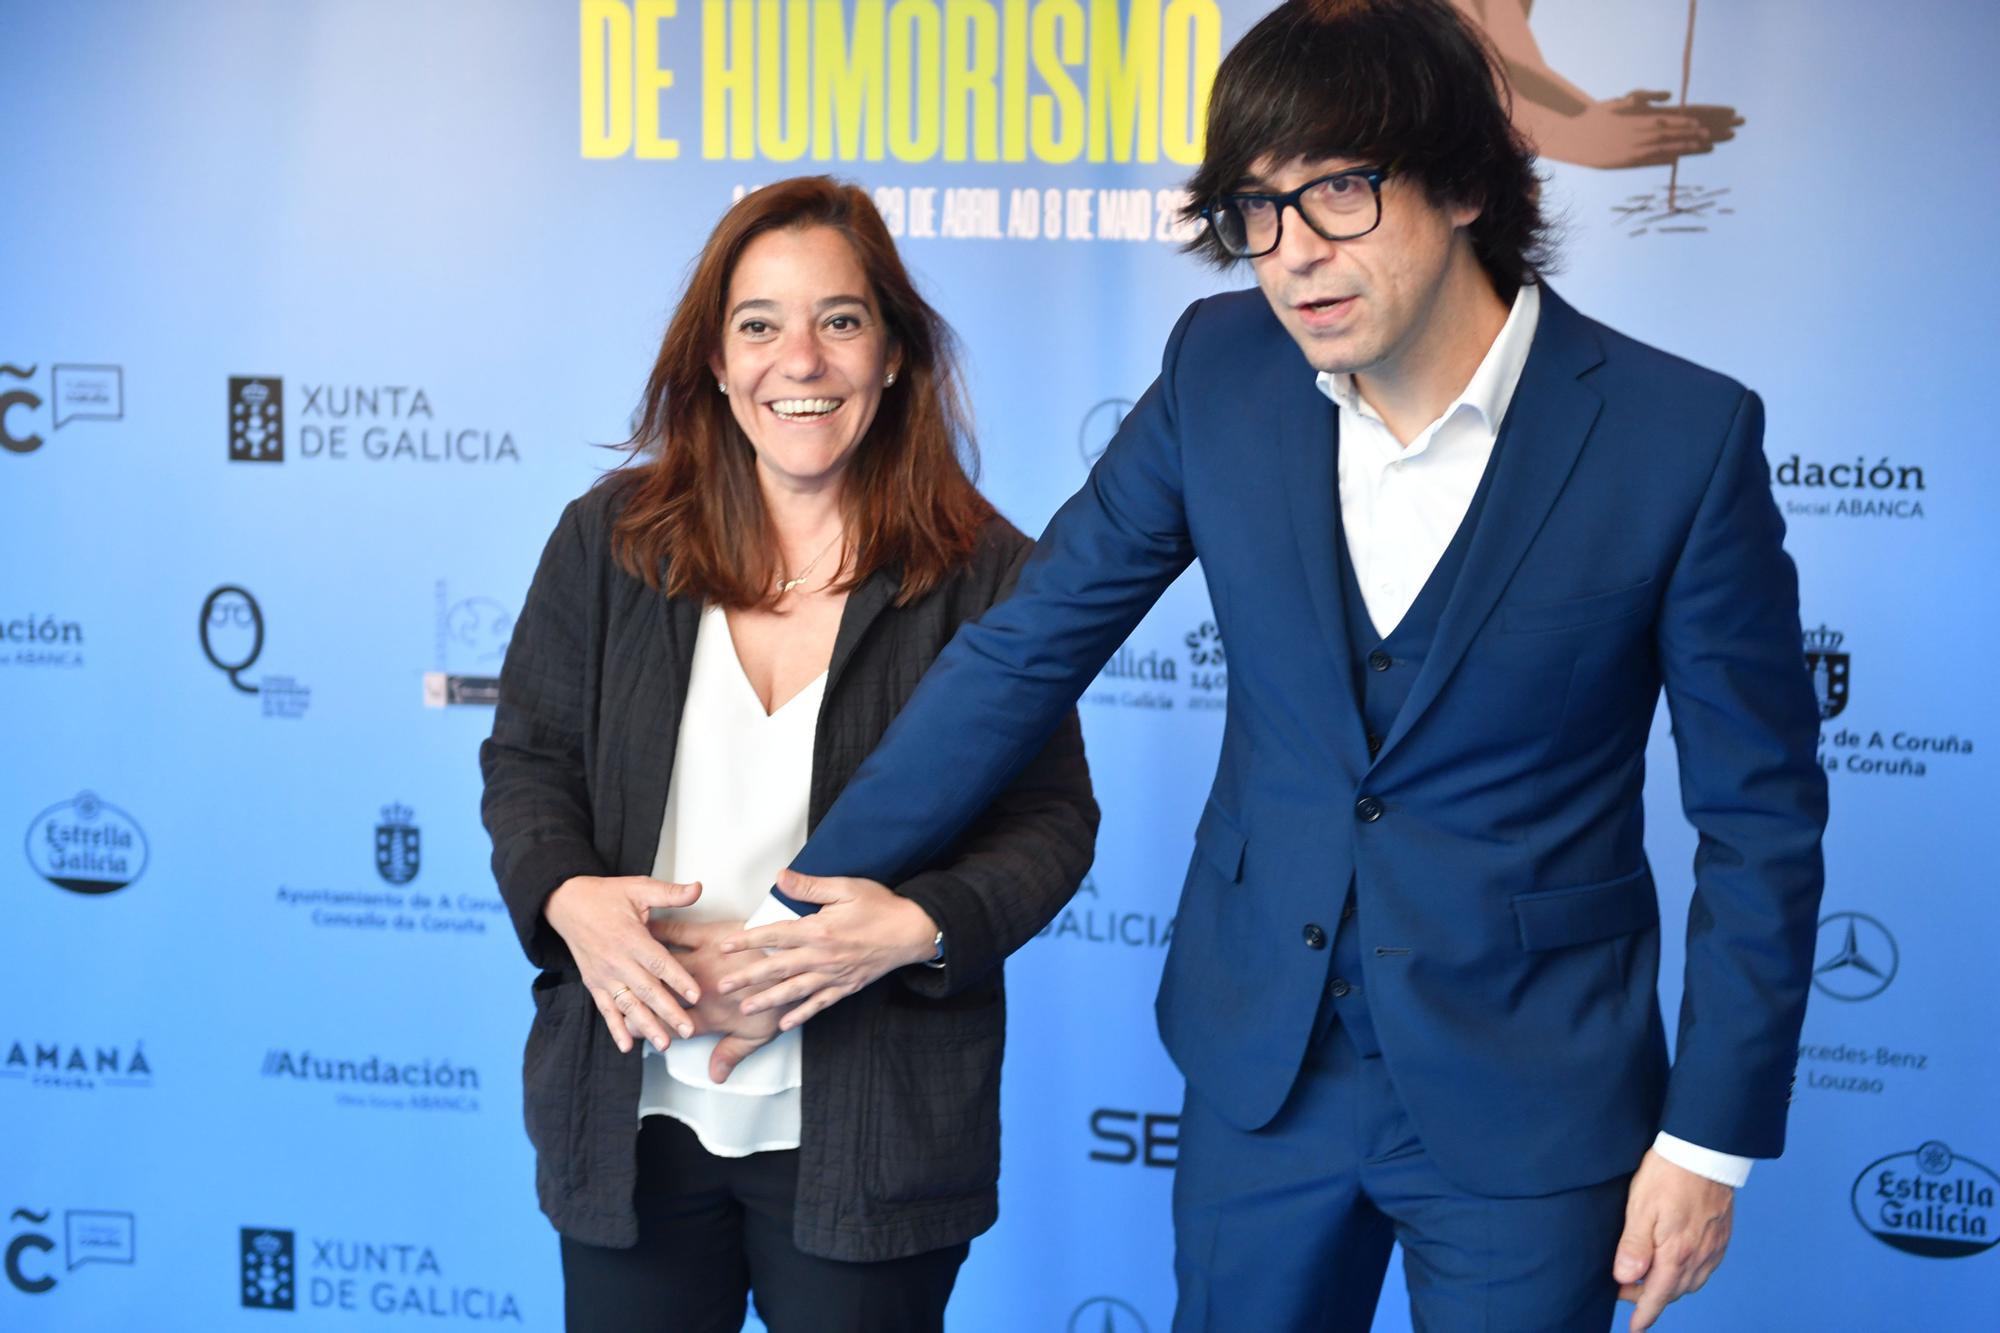 Último acto del Encuentro Mundial de Humorismo con el reconocimiento a Andreu Buenafuente